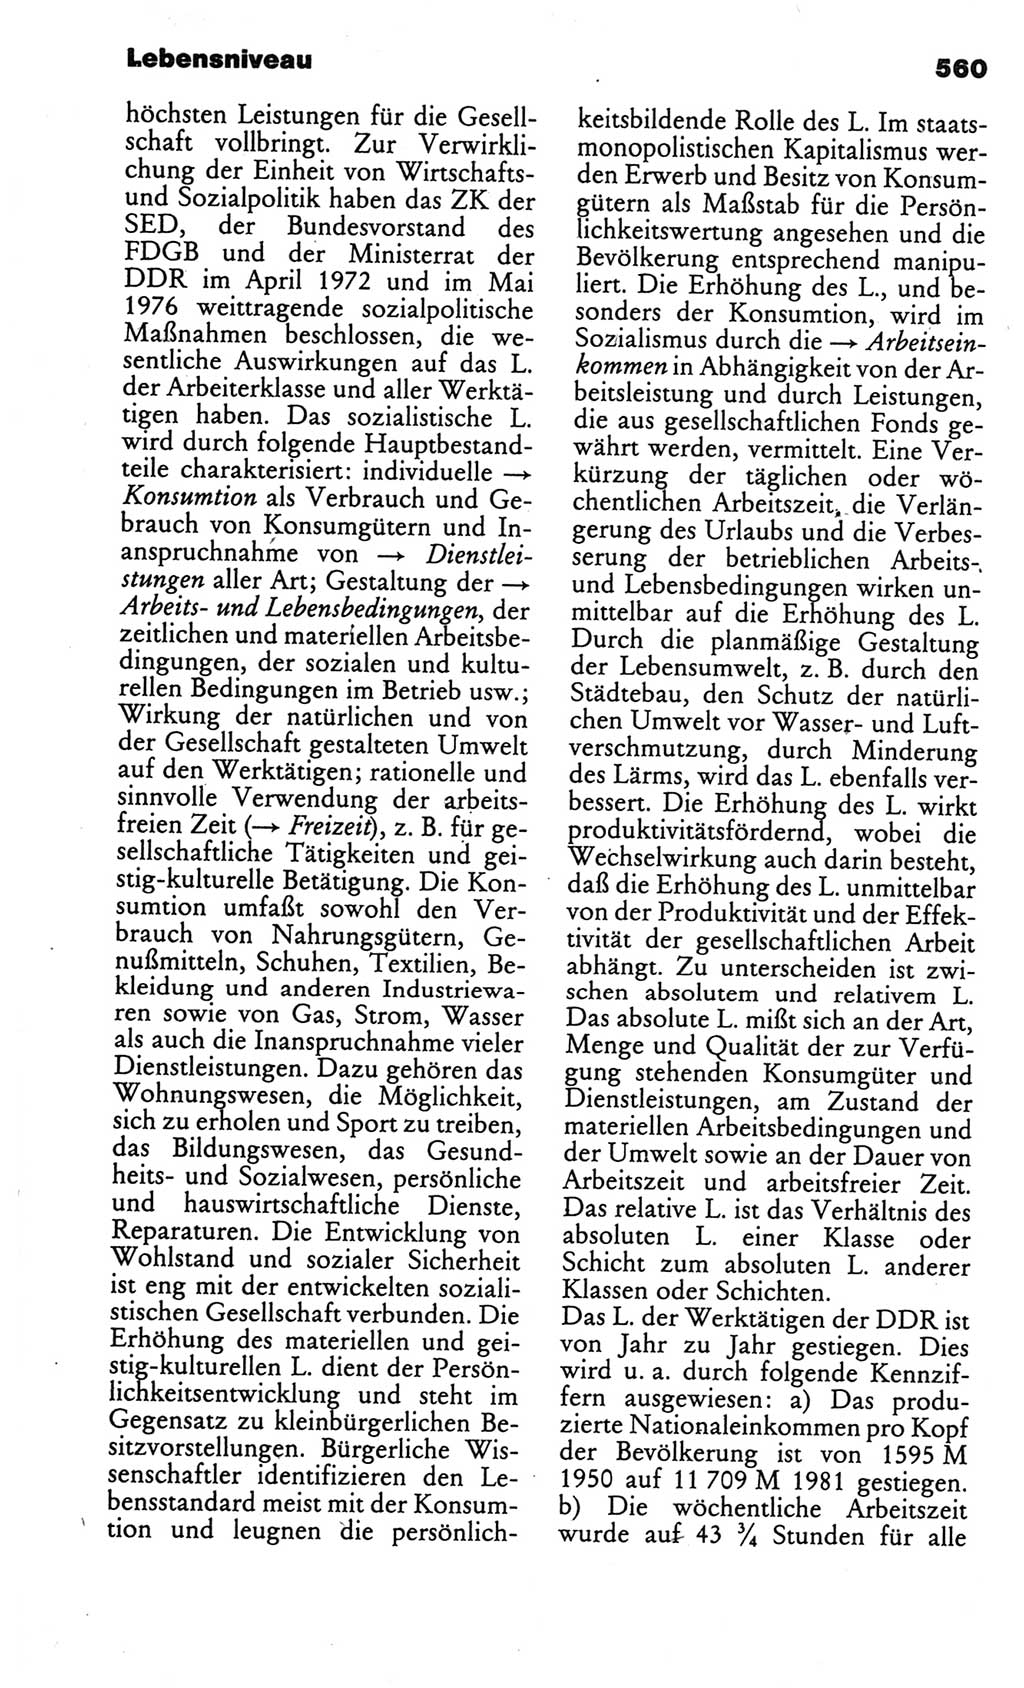 Kleines politisches Wörterbuch [Deutsche Demokratische Republik (DDR)] 1986, Seite 560 (Kl. pol. Wb. DDR 1986, S. 560)